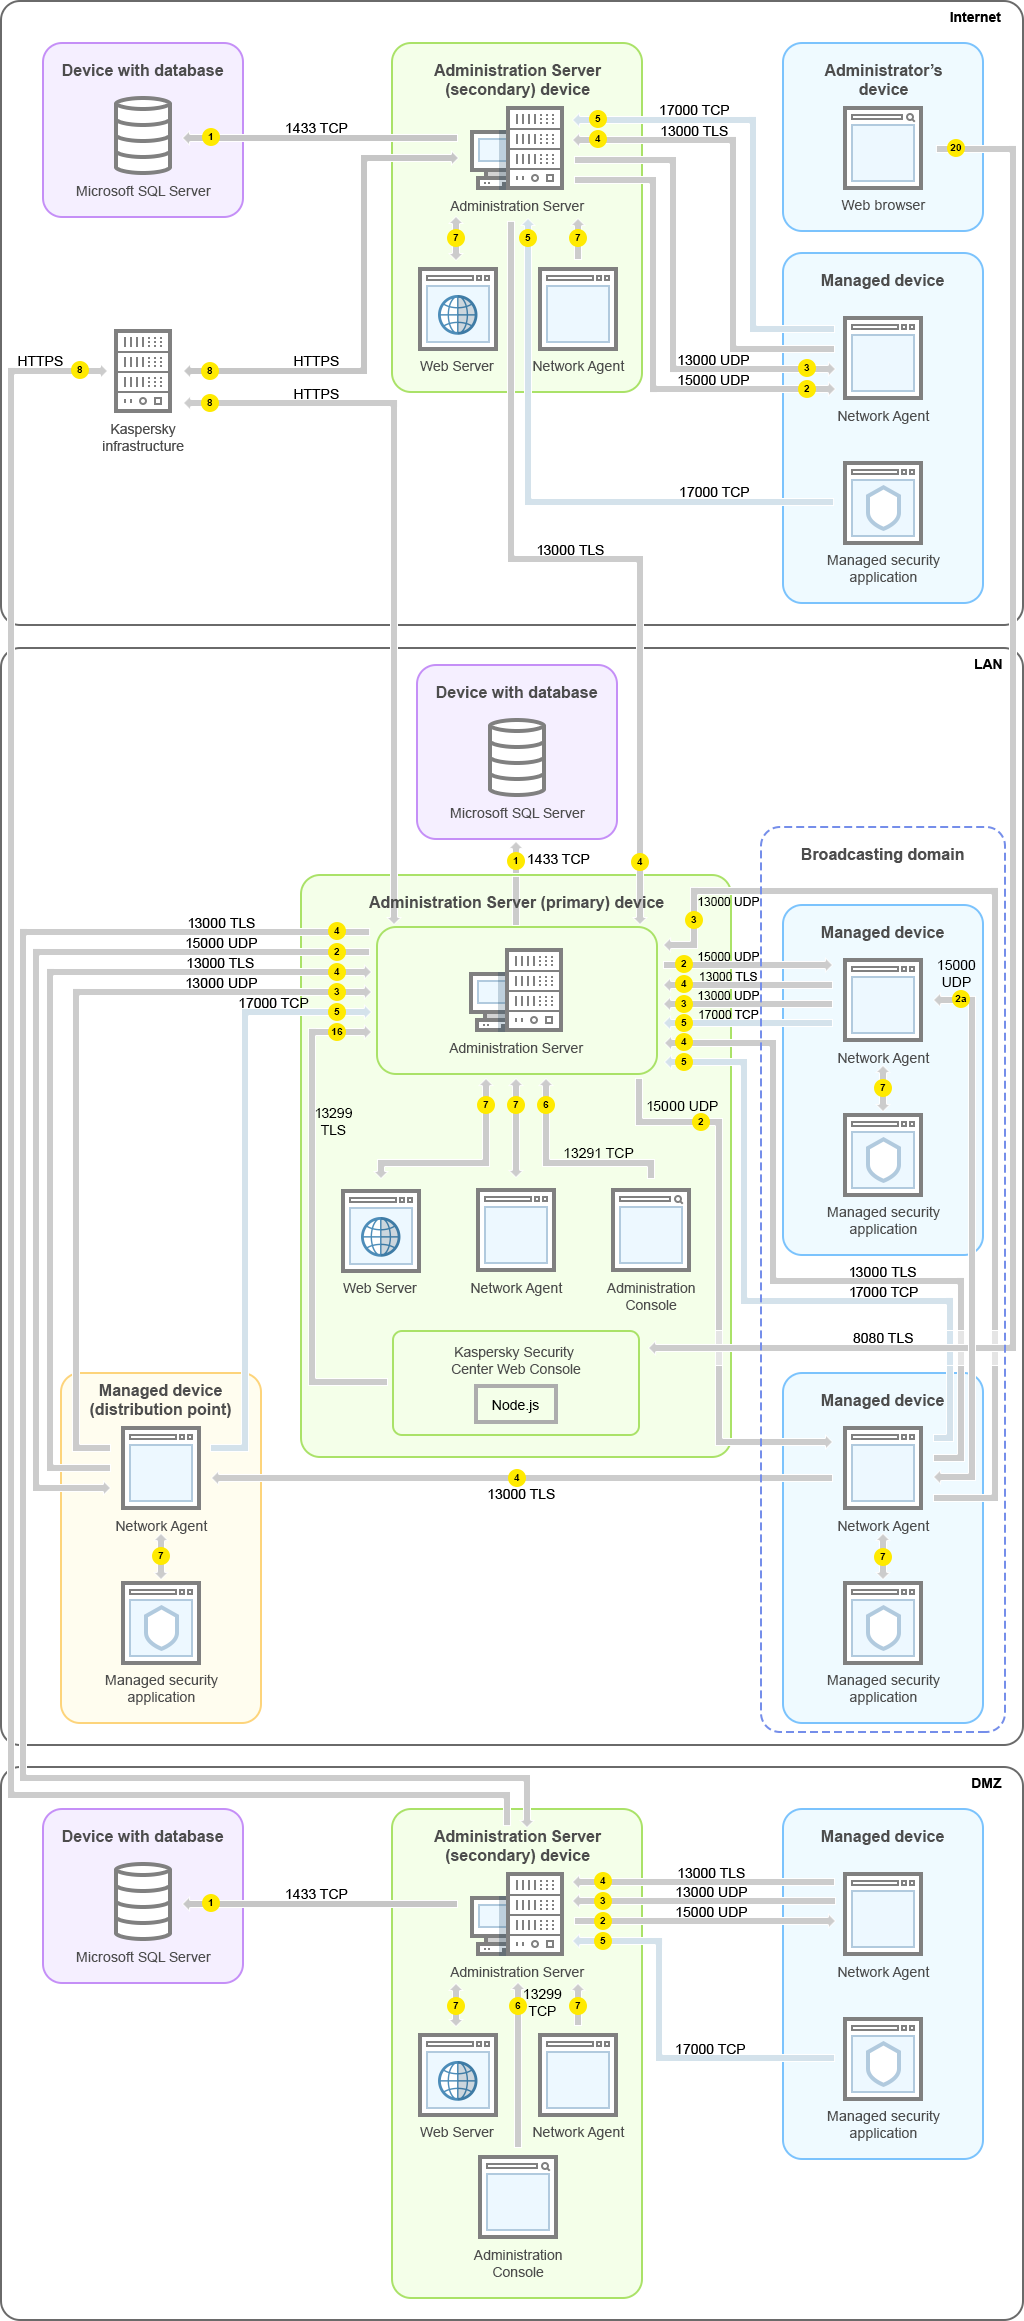 主管理服务器及其受管理设备位于 LAN 中，从属管理服务器及其受管理设备位于 DMZ 中，另一个从属管理服务器及其受管理设备和管理员设备位于互联网上。